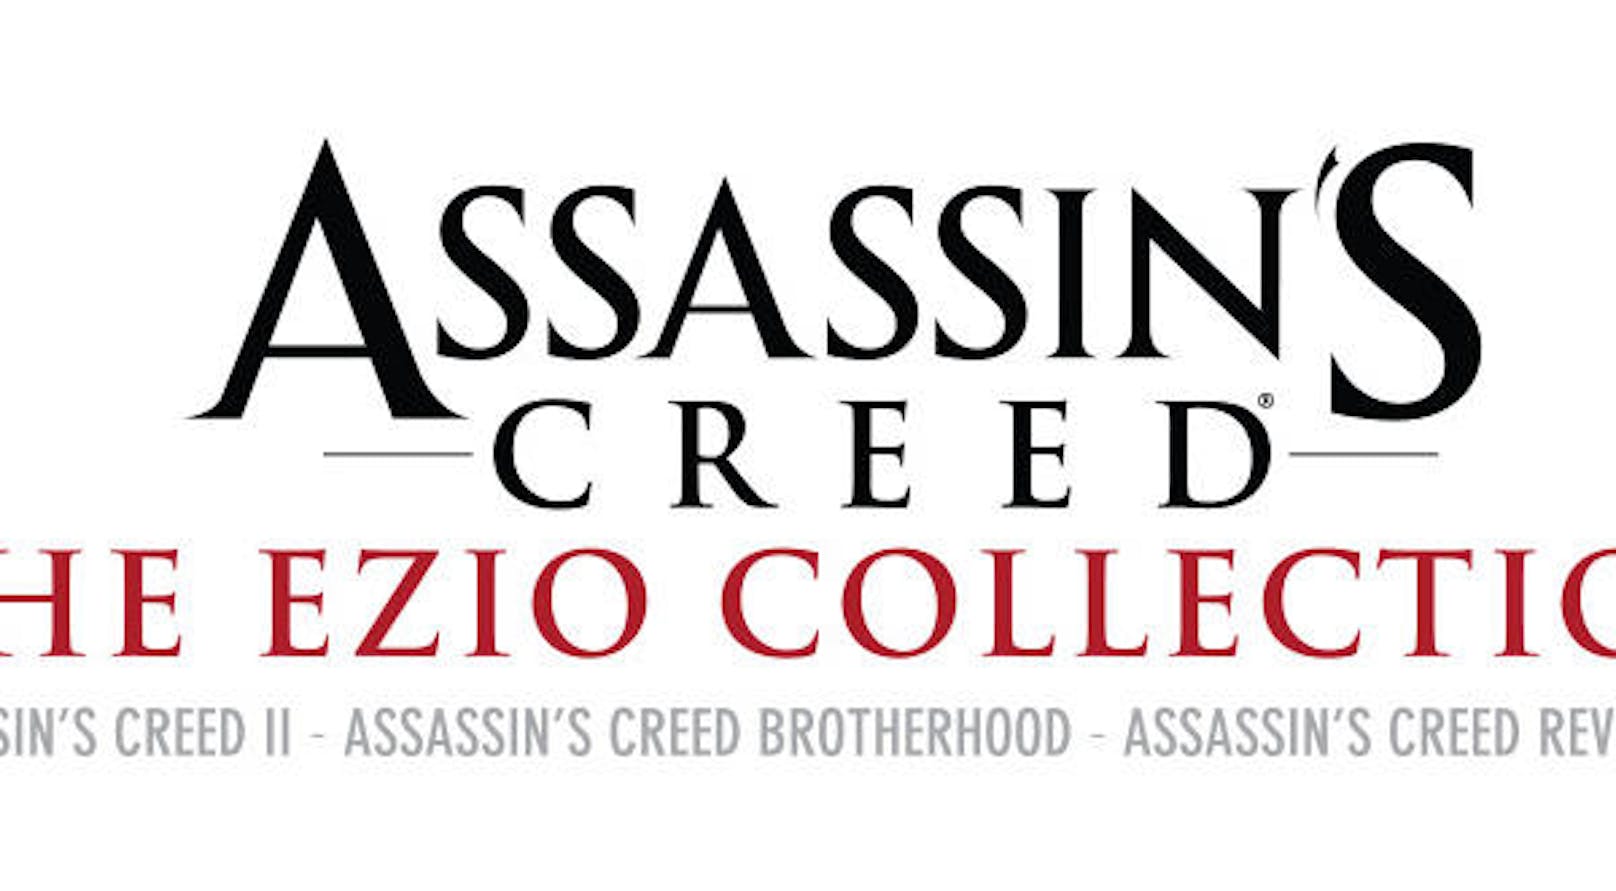 Wer sich schon lange überlegt, mit welchem Teil er ins Assassinenleben einsteigen will, für den ist die Ezio Collection neben Syndicate so scharf wie die Klinge des Protagonisten.